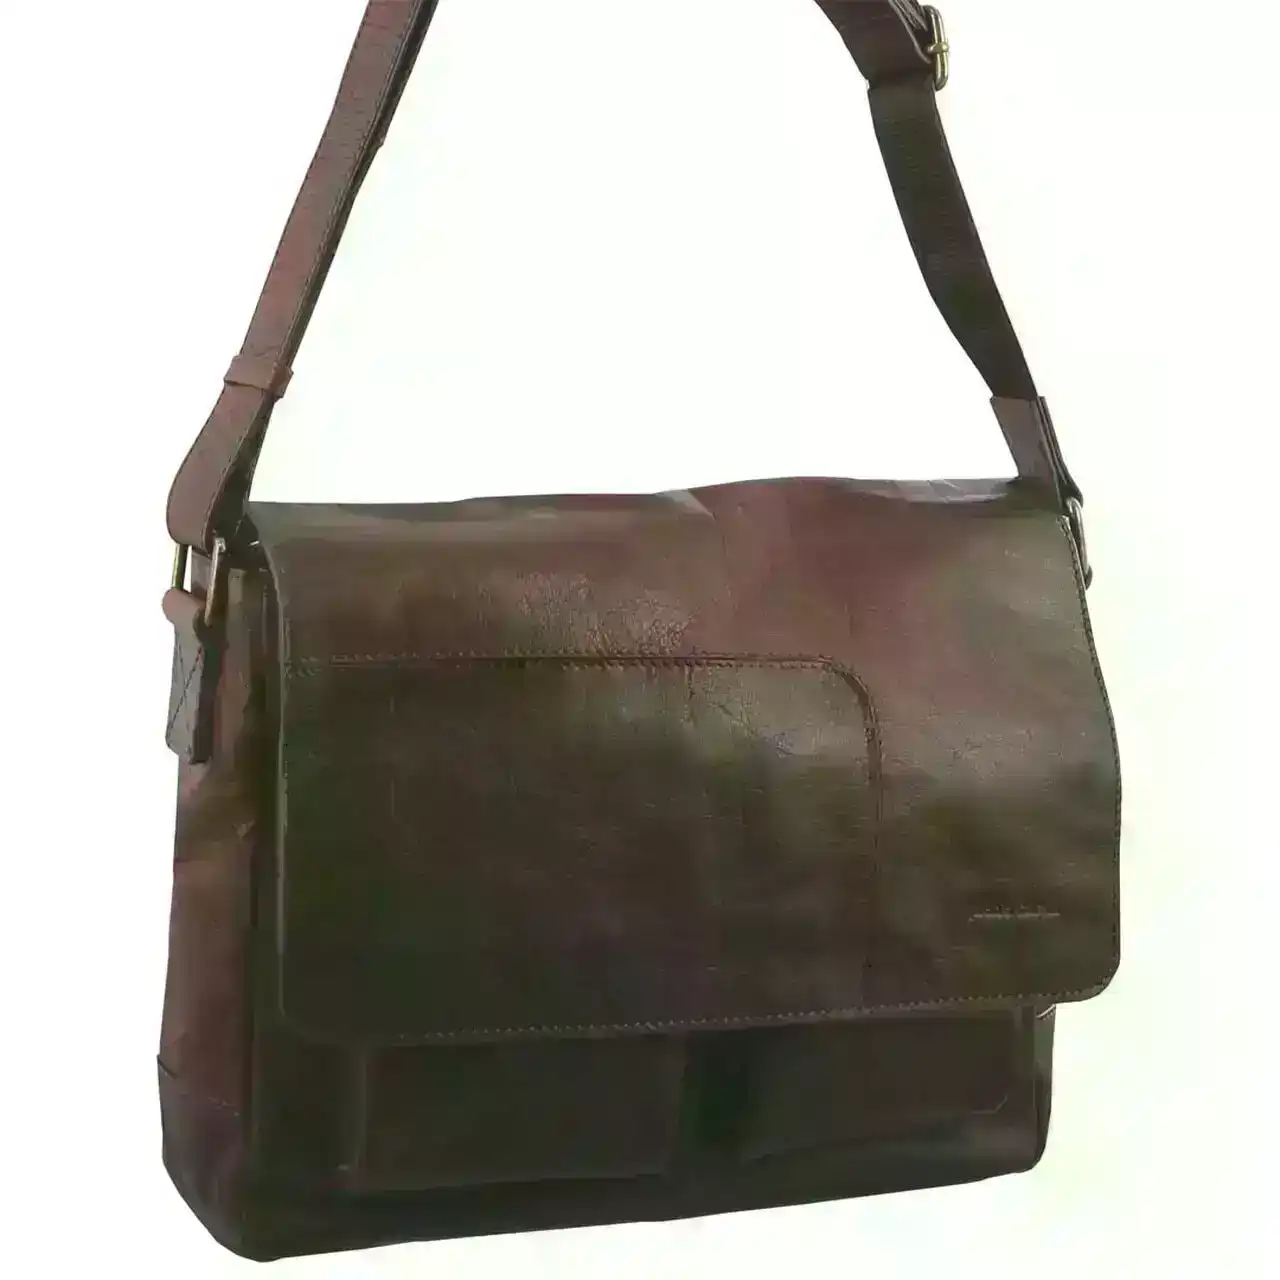 Pierre Cardin Rustic Leather Computer/Messenger Travel Shoulder Bag - Chestnut